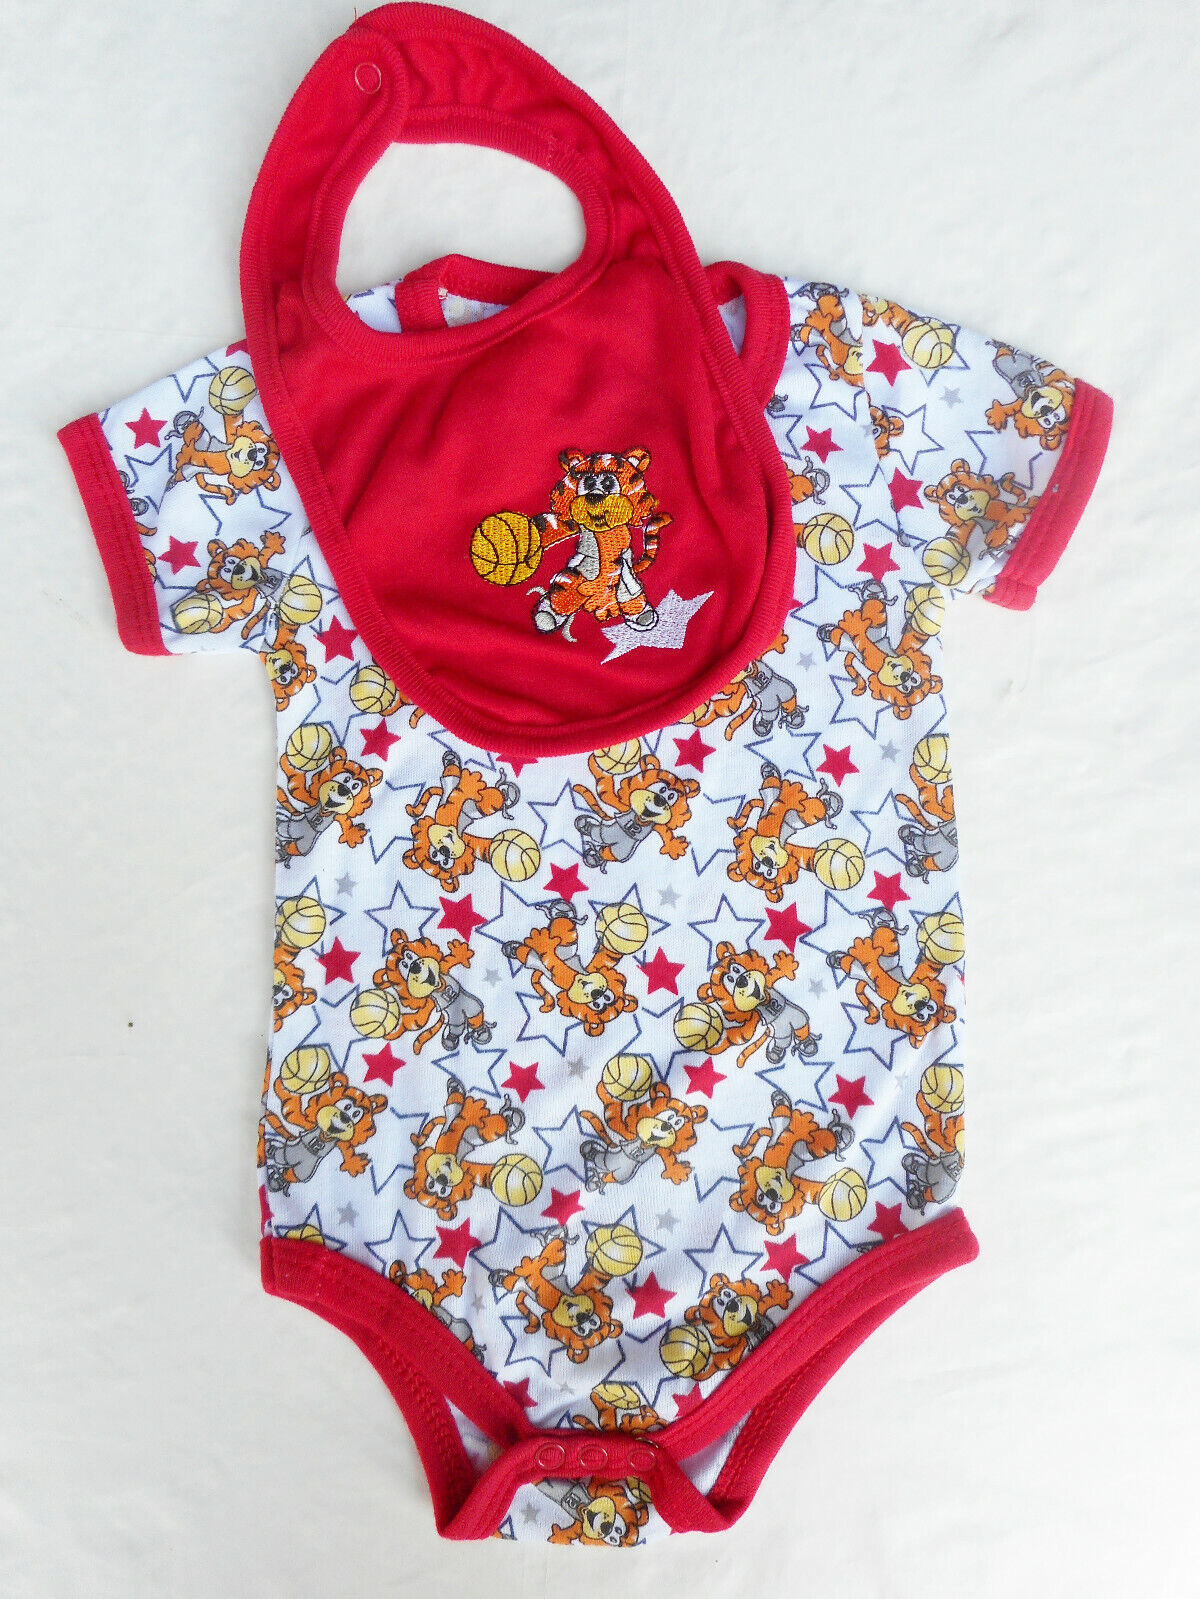 Baby Jungen Anzug 👶🏻 Body + Lätzchen 👶🏻 Fussball 👶🏻 Tiger   👶🏻 68/74